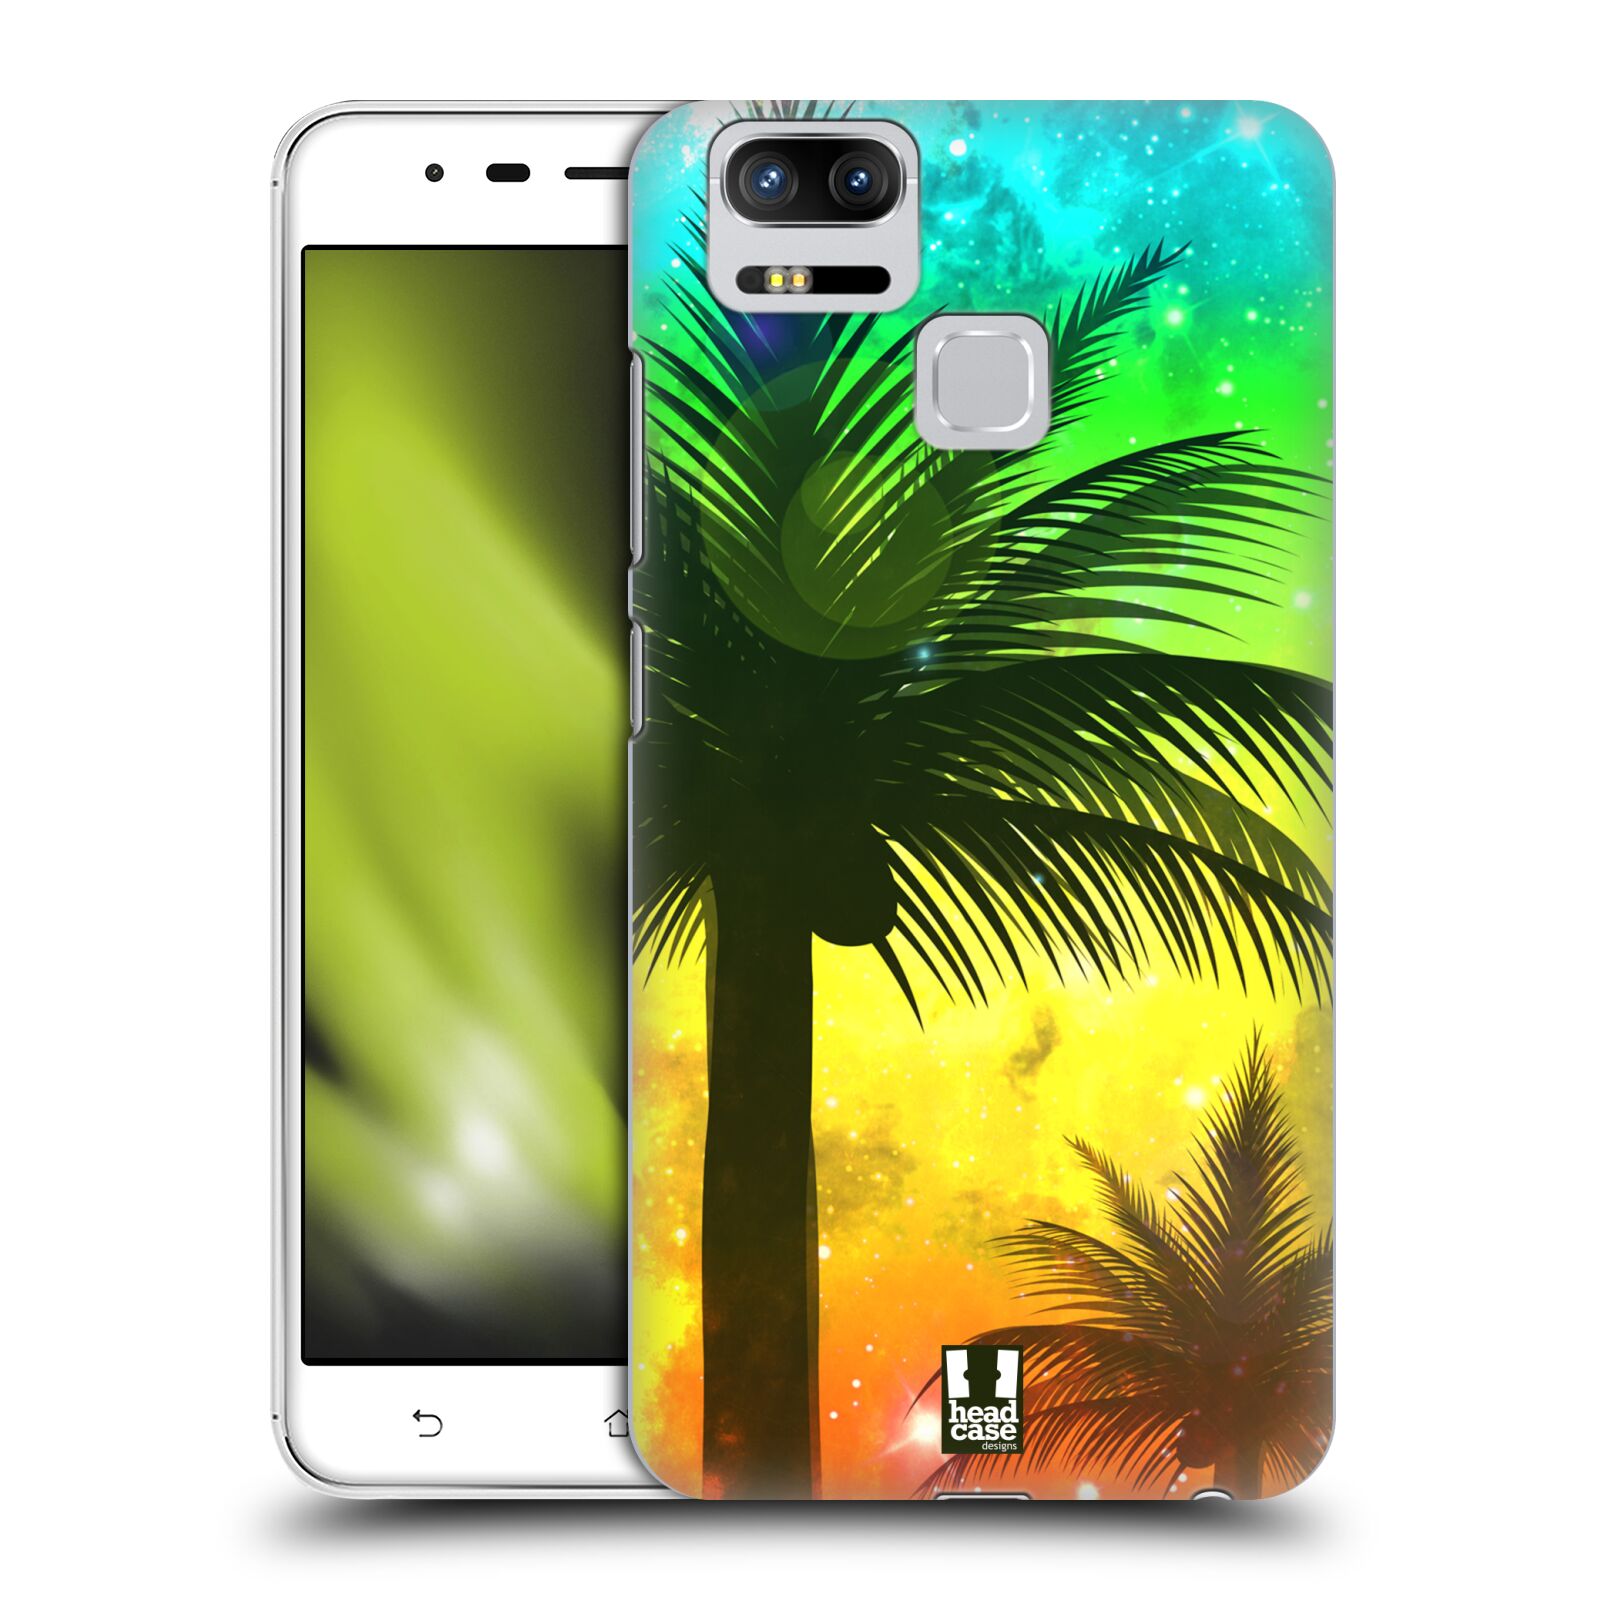 HEAD CASE plastový obal na mobil Asus Zenfone 3 Zoom ZE553KL vzor Kreslený motiv silueta moře a palmy ZELENÁ A ORANŽOVÁ